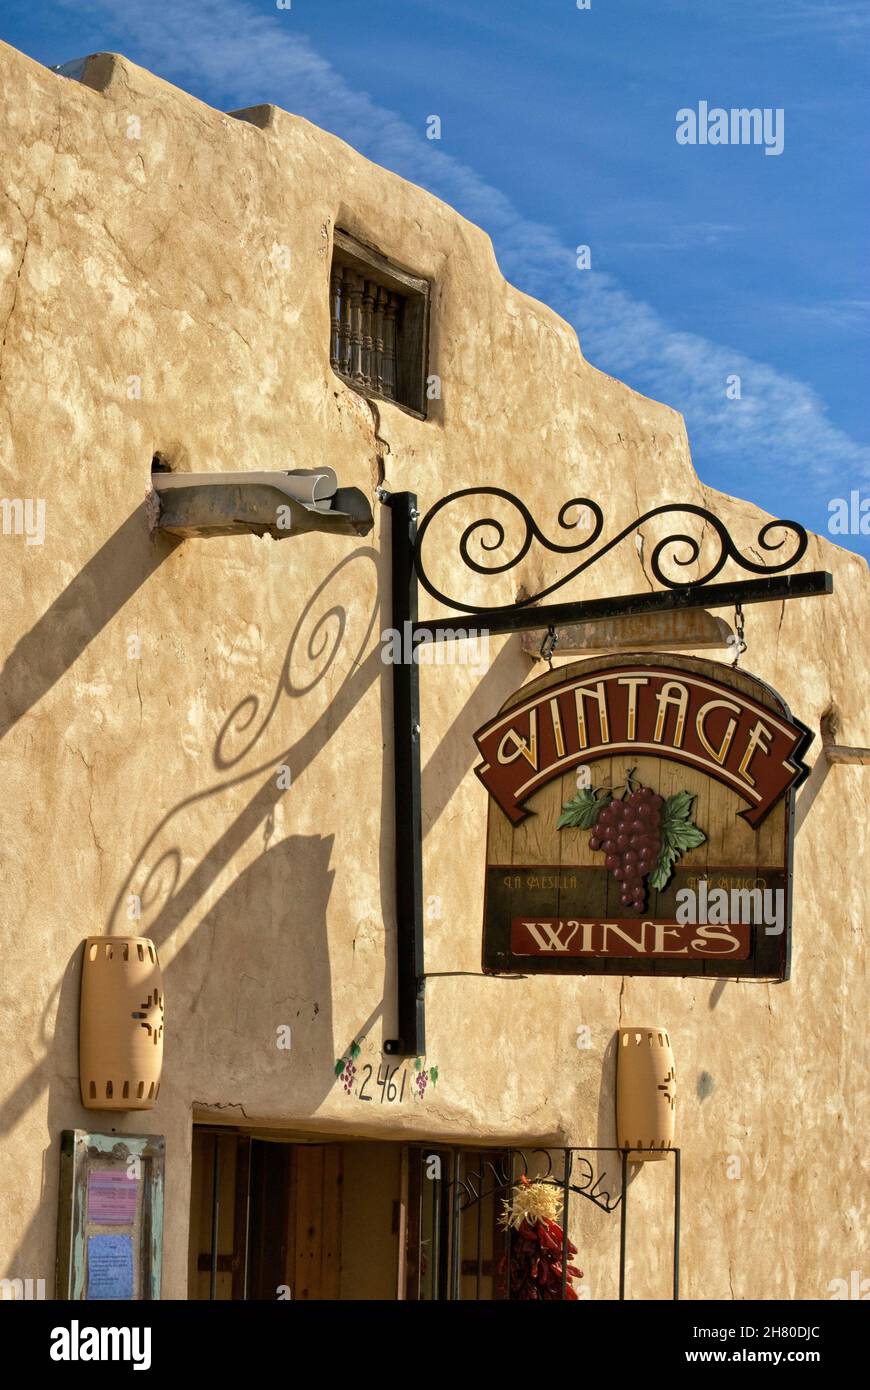 Panneau au Vintage Wines Cafe sur la Calle principal dans la ville de Mesilla près de Las Cruces, Nouveau-Mexique, Etats-Unis Banque D'Images